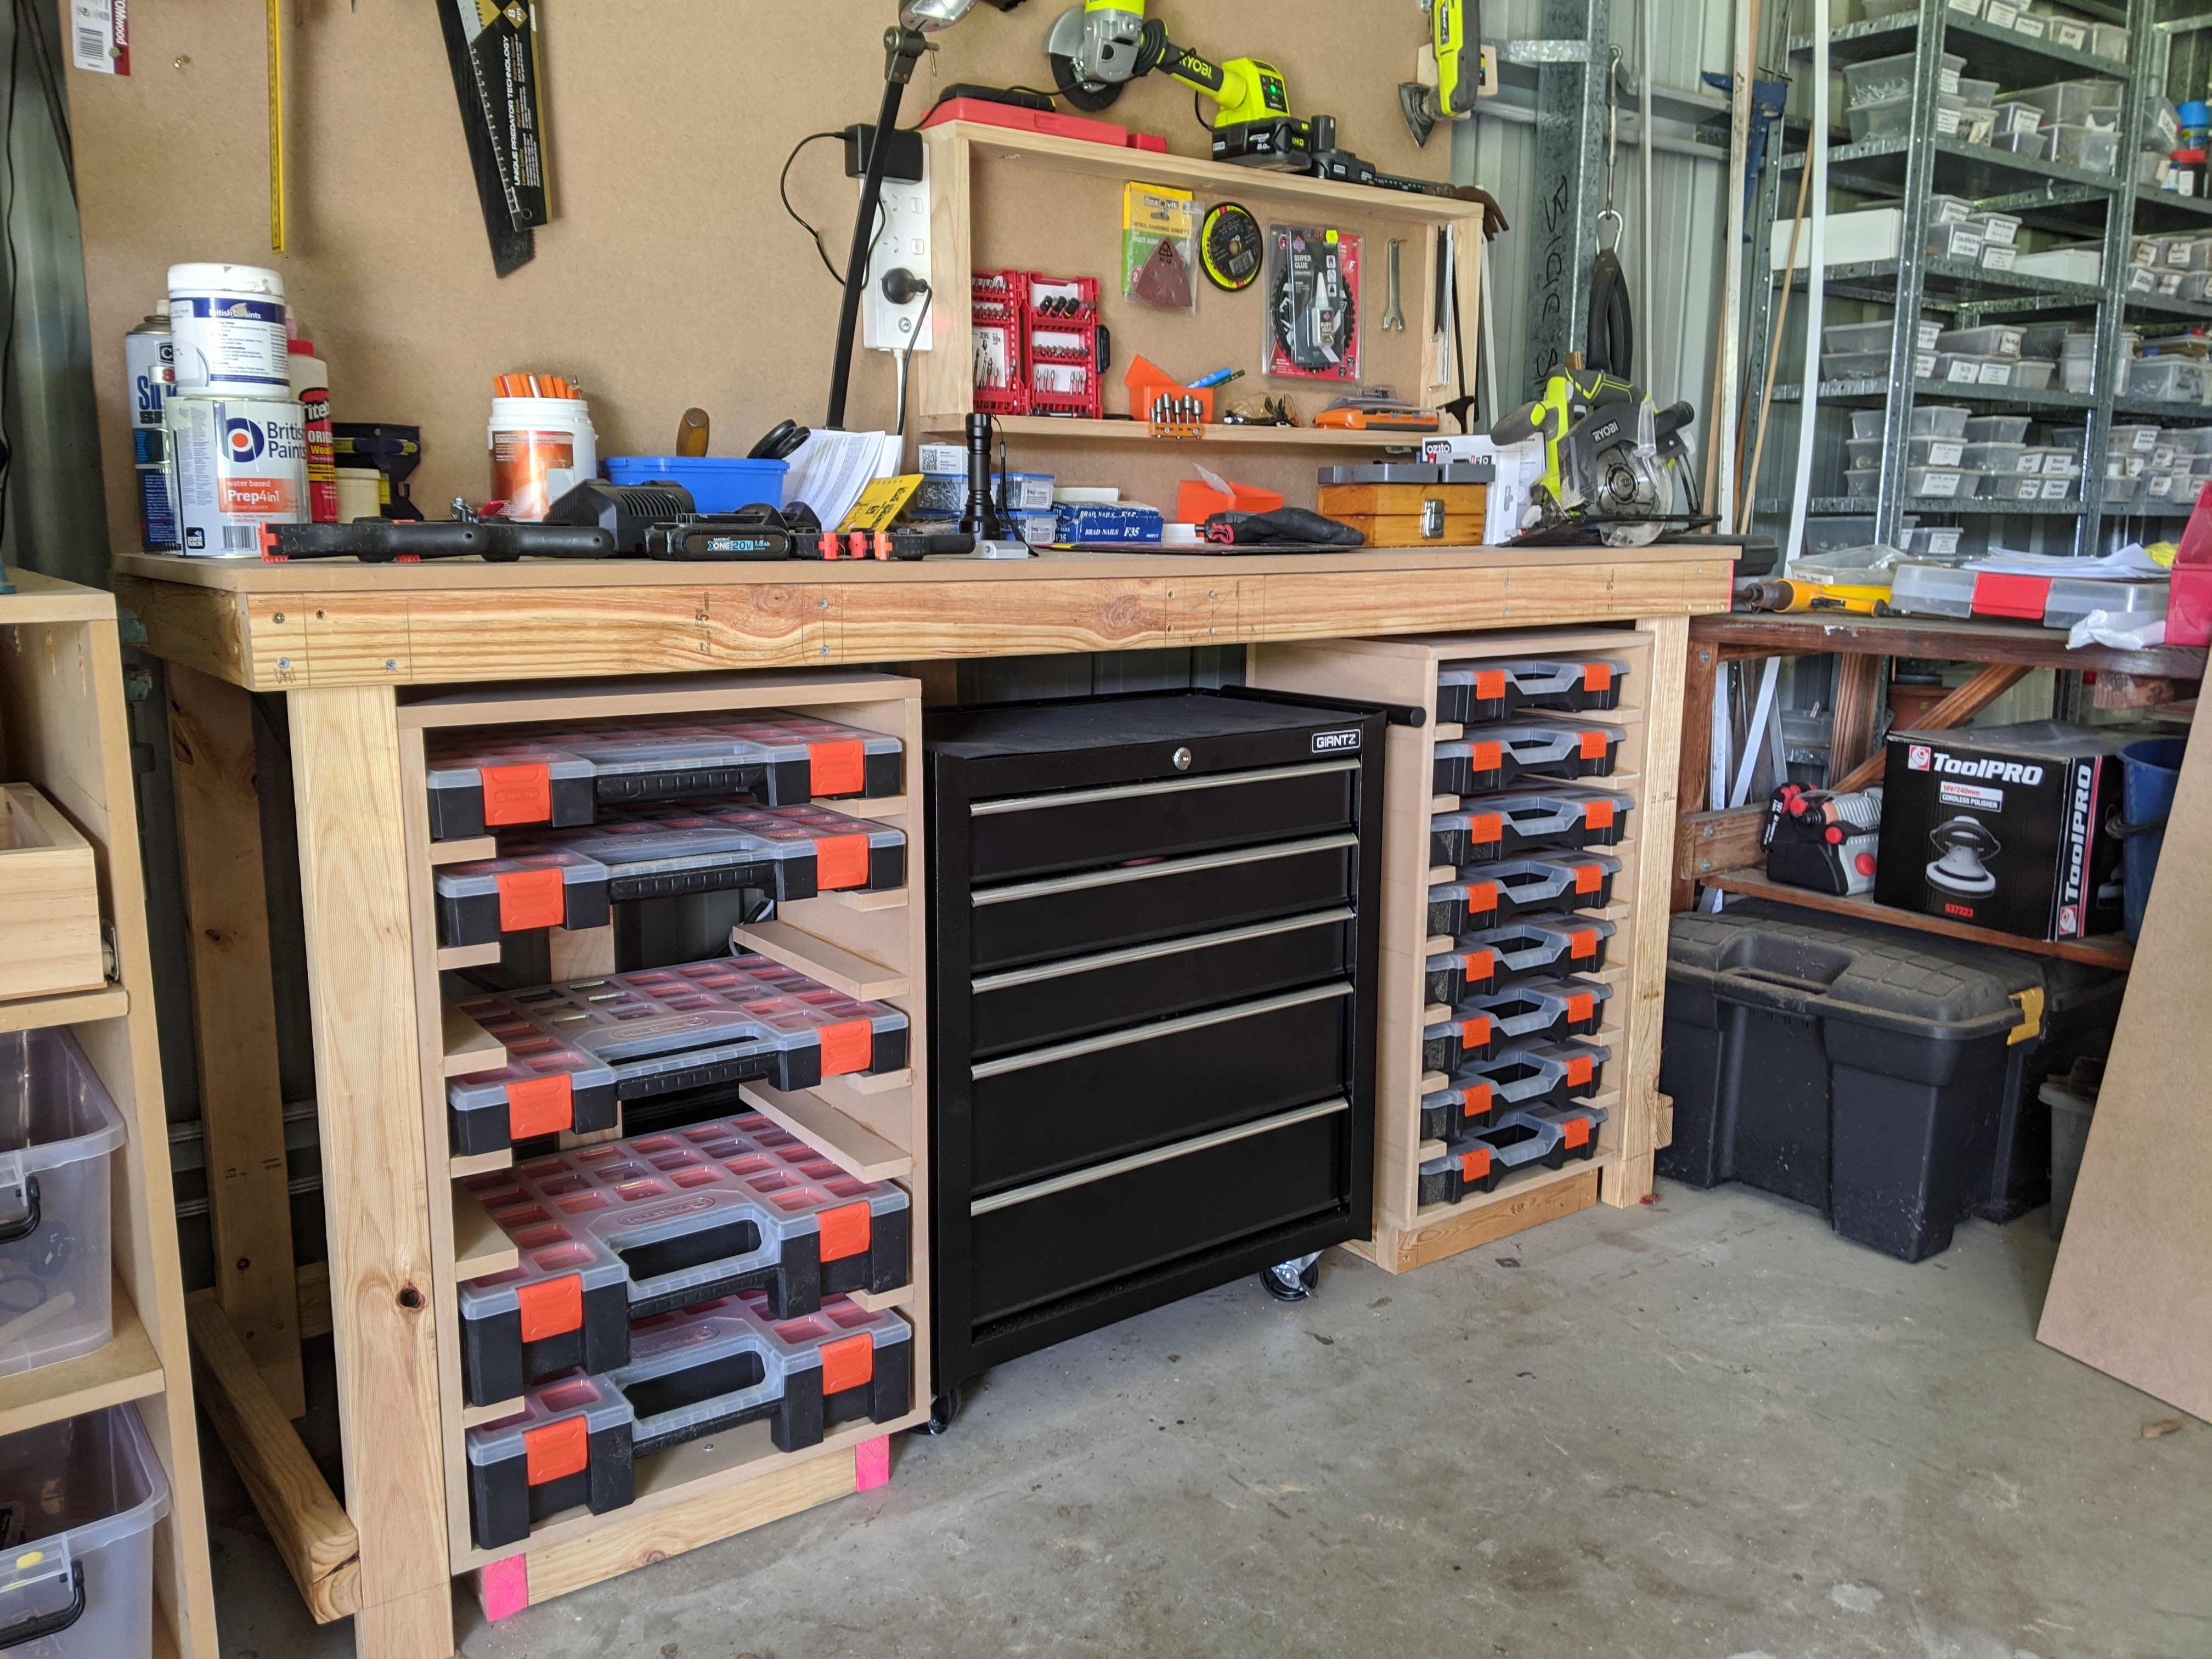 Cabinets for workshop/garage | Bunnings Workshop community